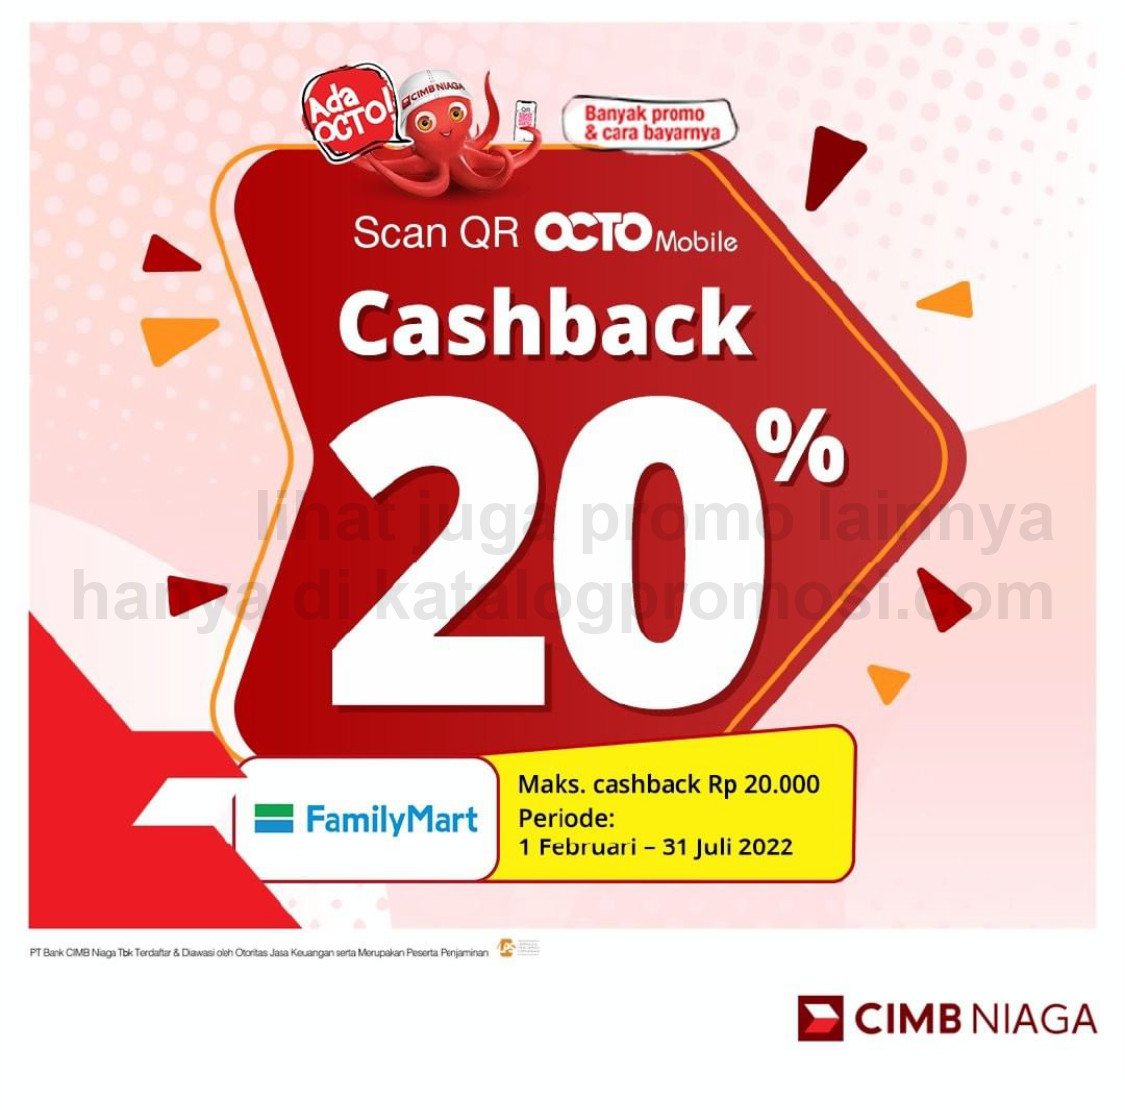 FAMILYMART Promo CASHBACK 20% untuk transaksi dengan QR OCTO Mobile CIMB Niaga